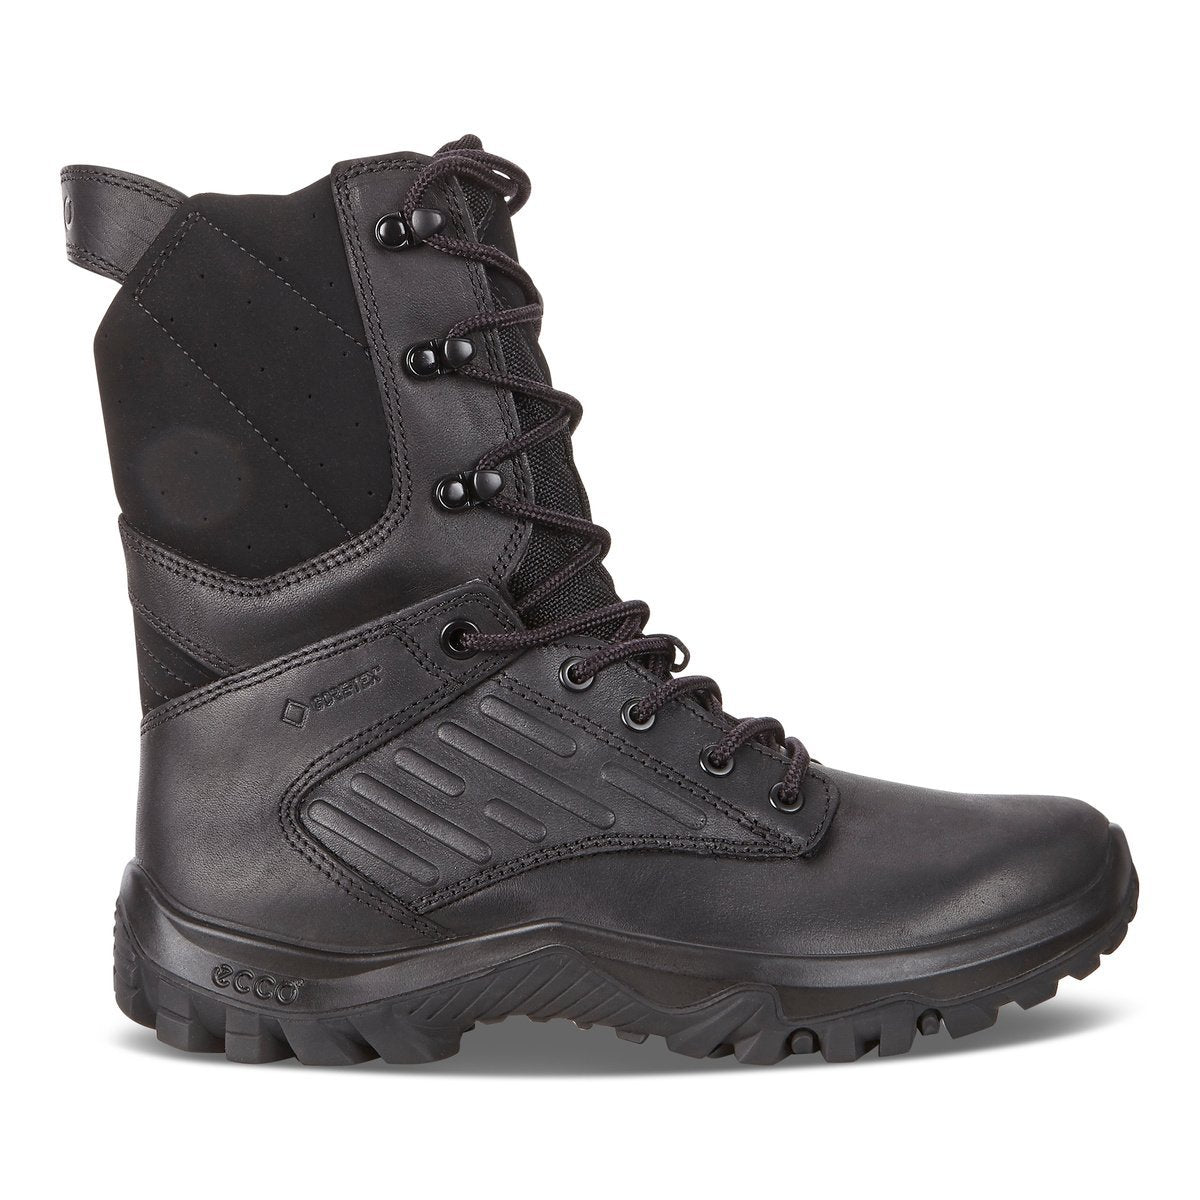 Ecco Professional 2.0 GTX Skindstøvle med Goretex jagt og outdoor,